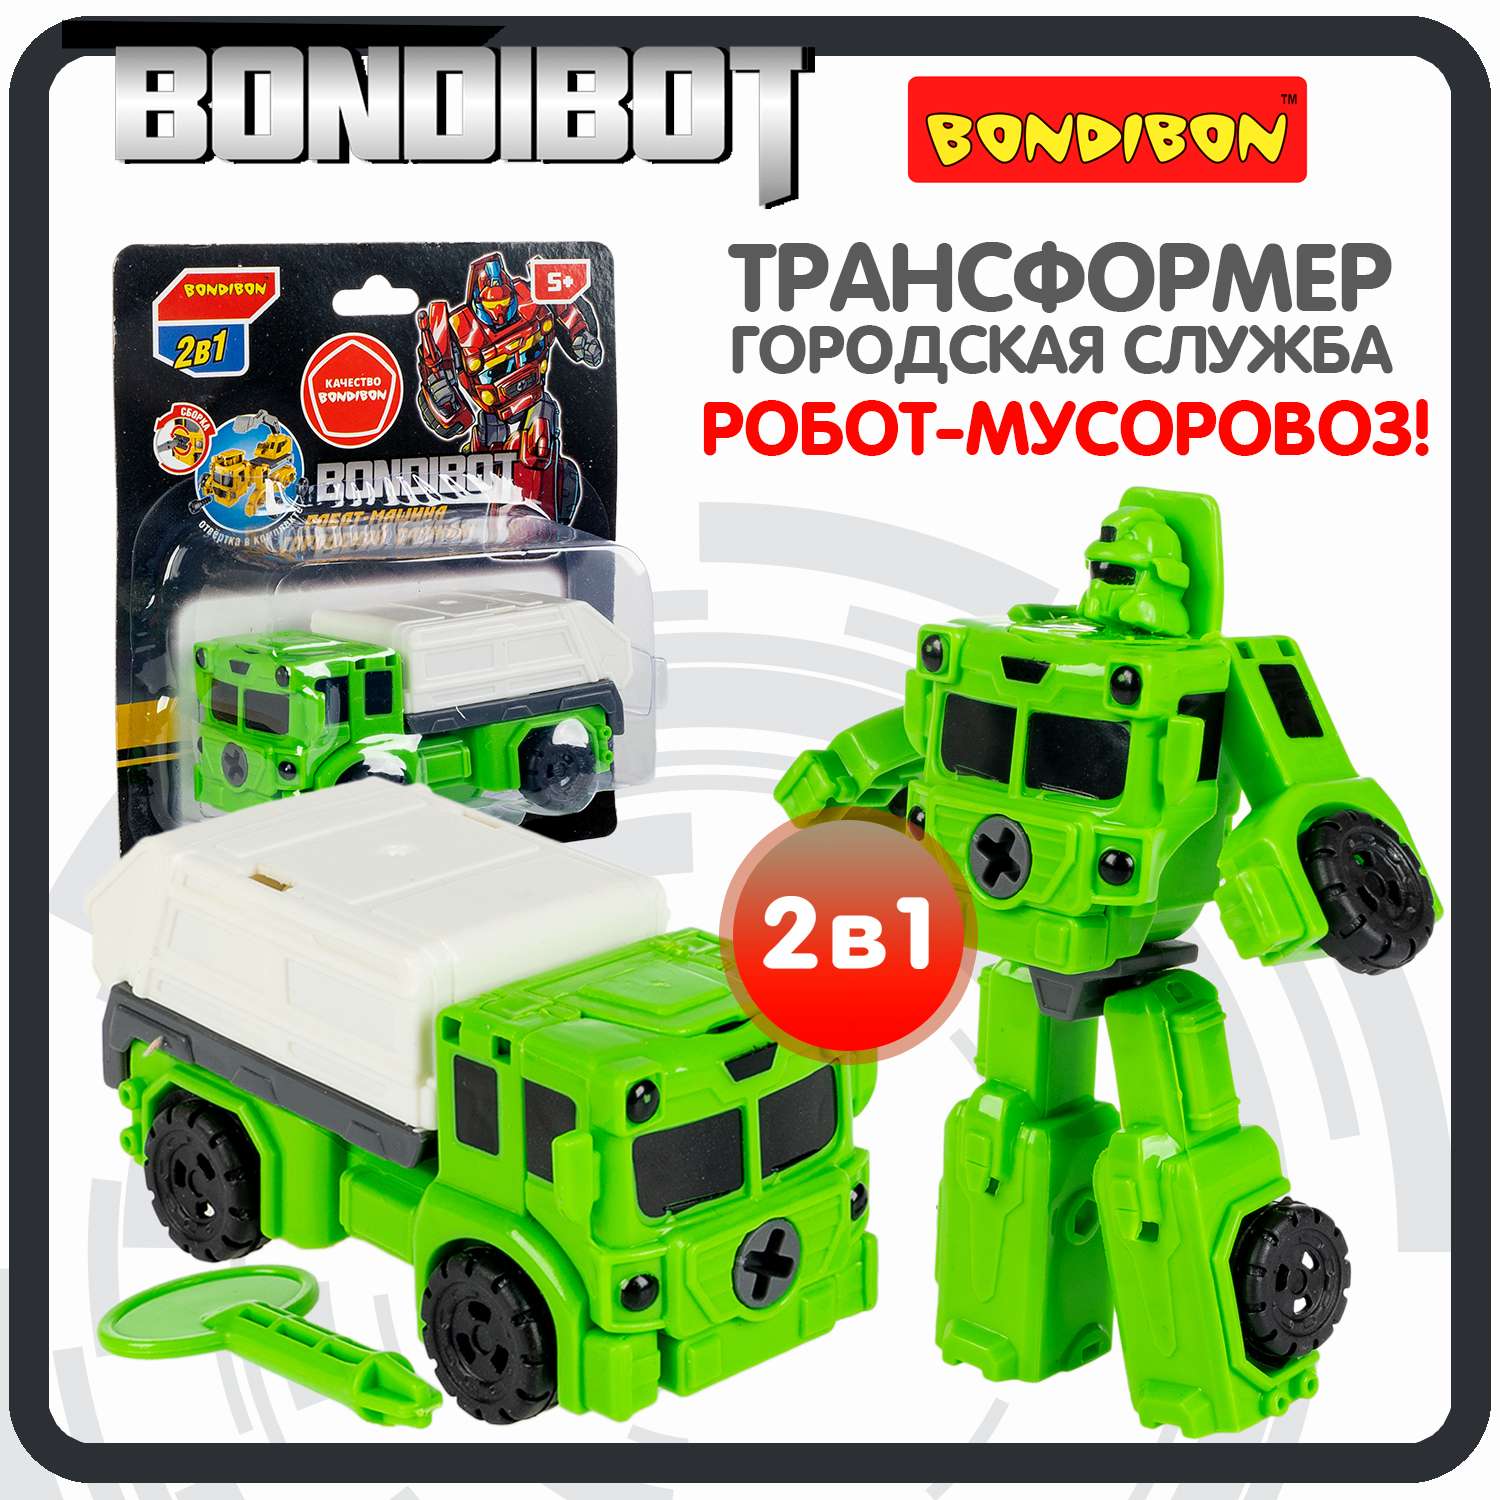 Трансформер BONDIBON BONDIBOT 2 в 1 робот-машина мусоровоз зеленого цвета - фото 1